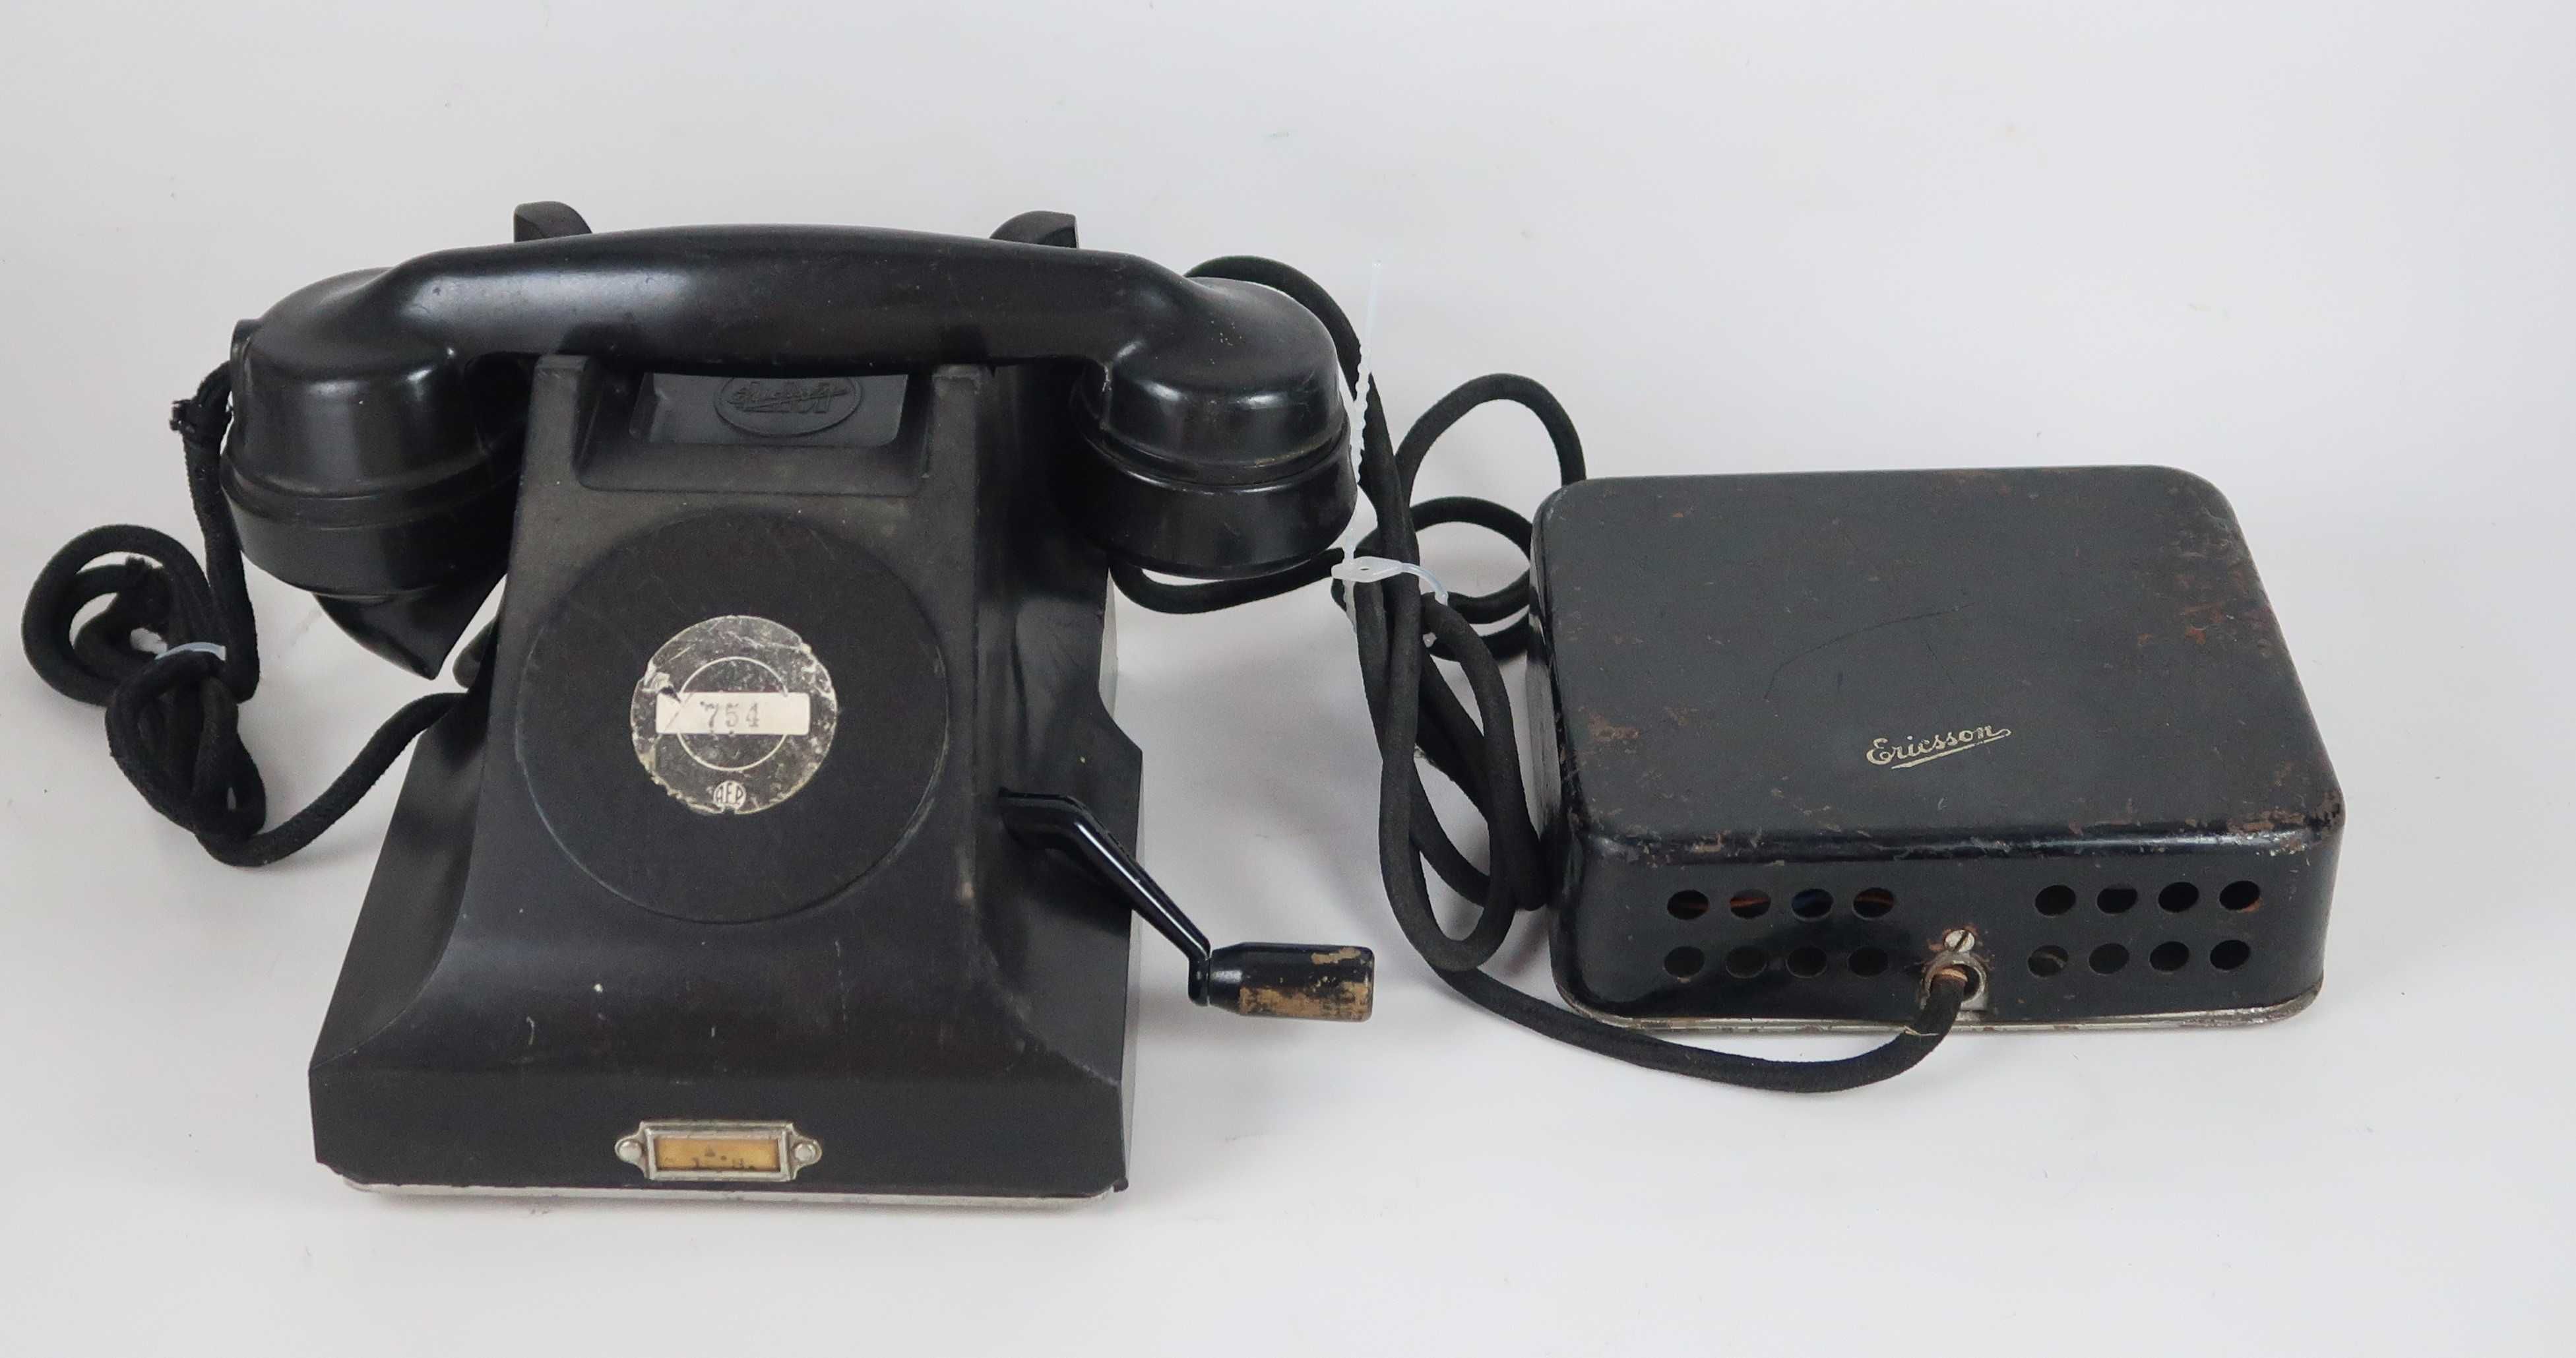 Telefones e campainhas antigas (Ericsson e ATM)